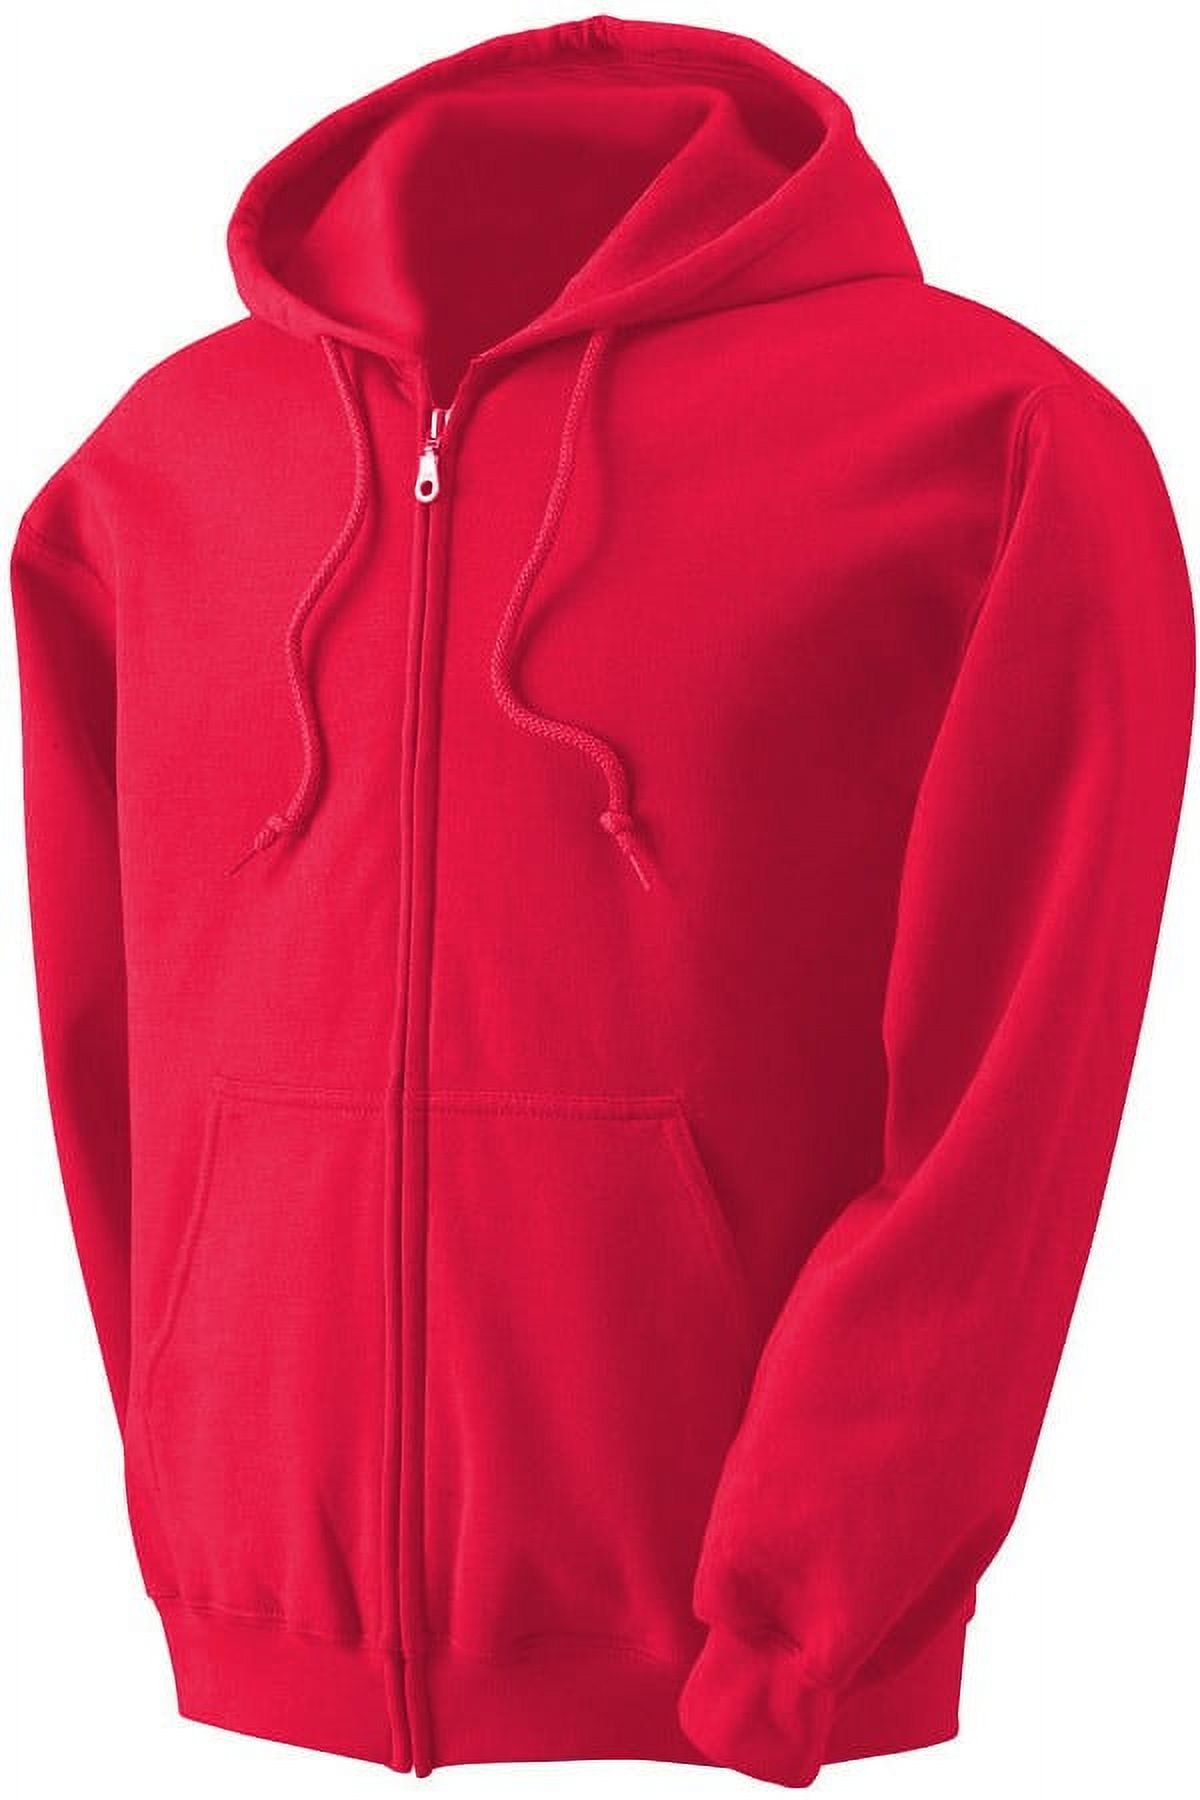 Men's Heavyweight Full Zip up Hoodie | Fleece Jacket | Warm Zipper Casual Sweatshirt with Hood - image 1 of 9